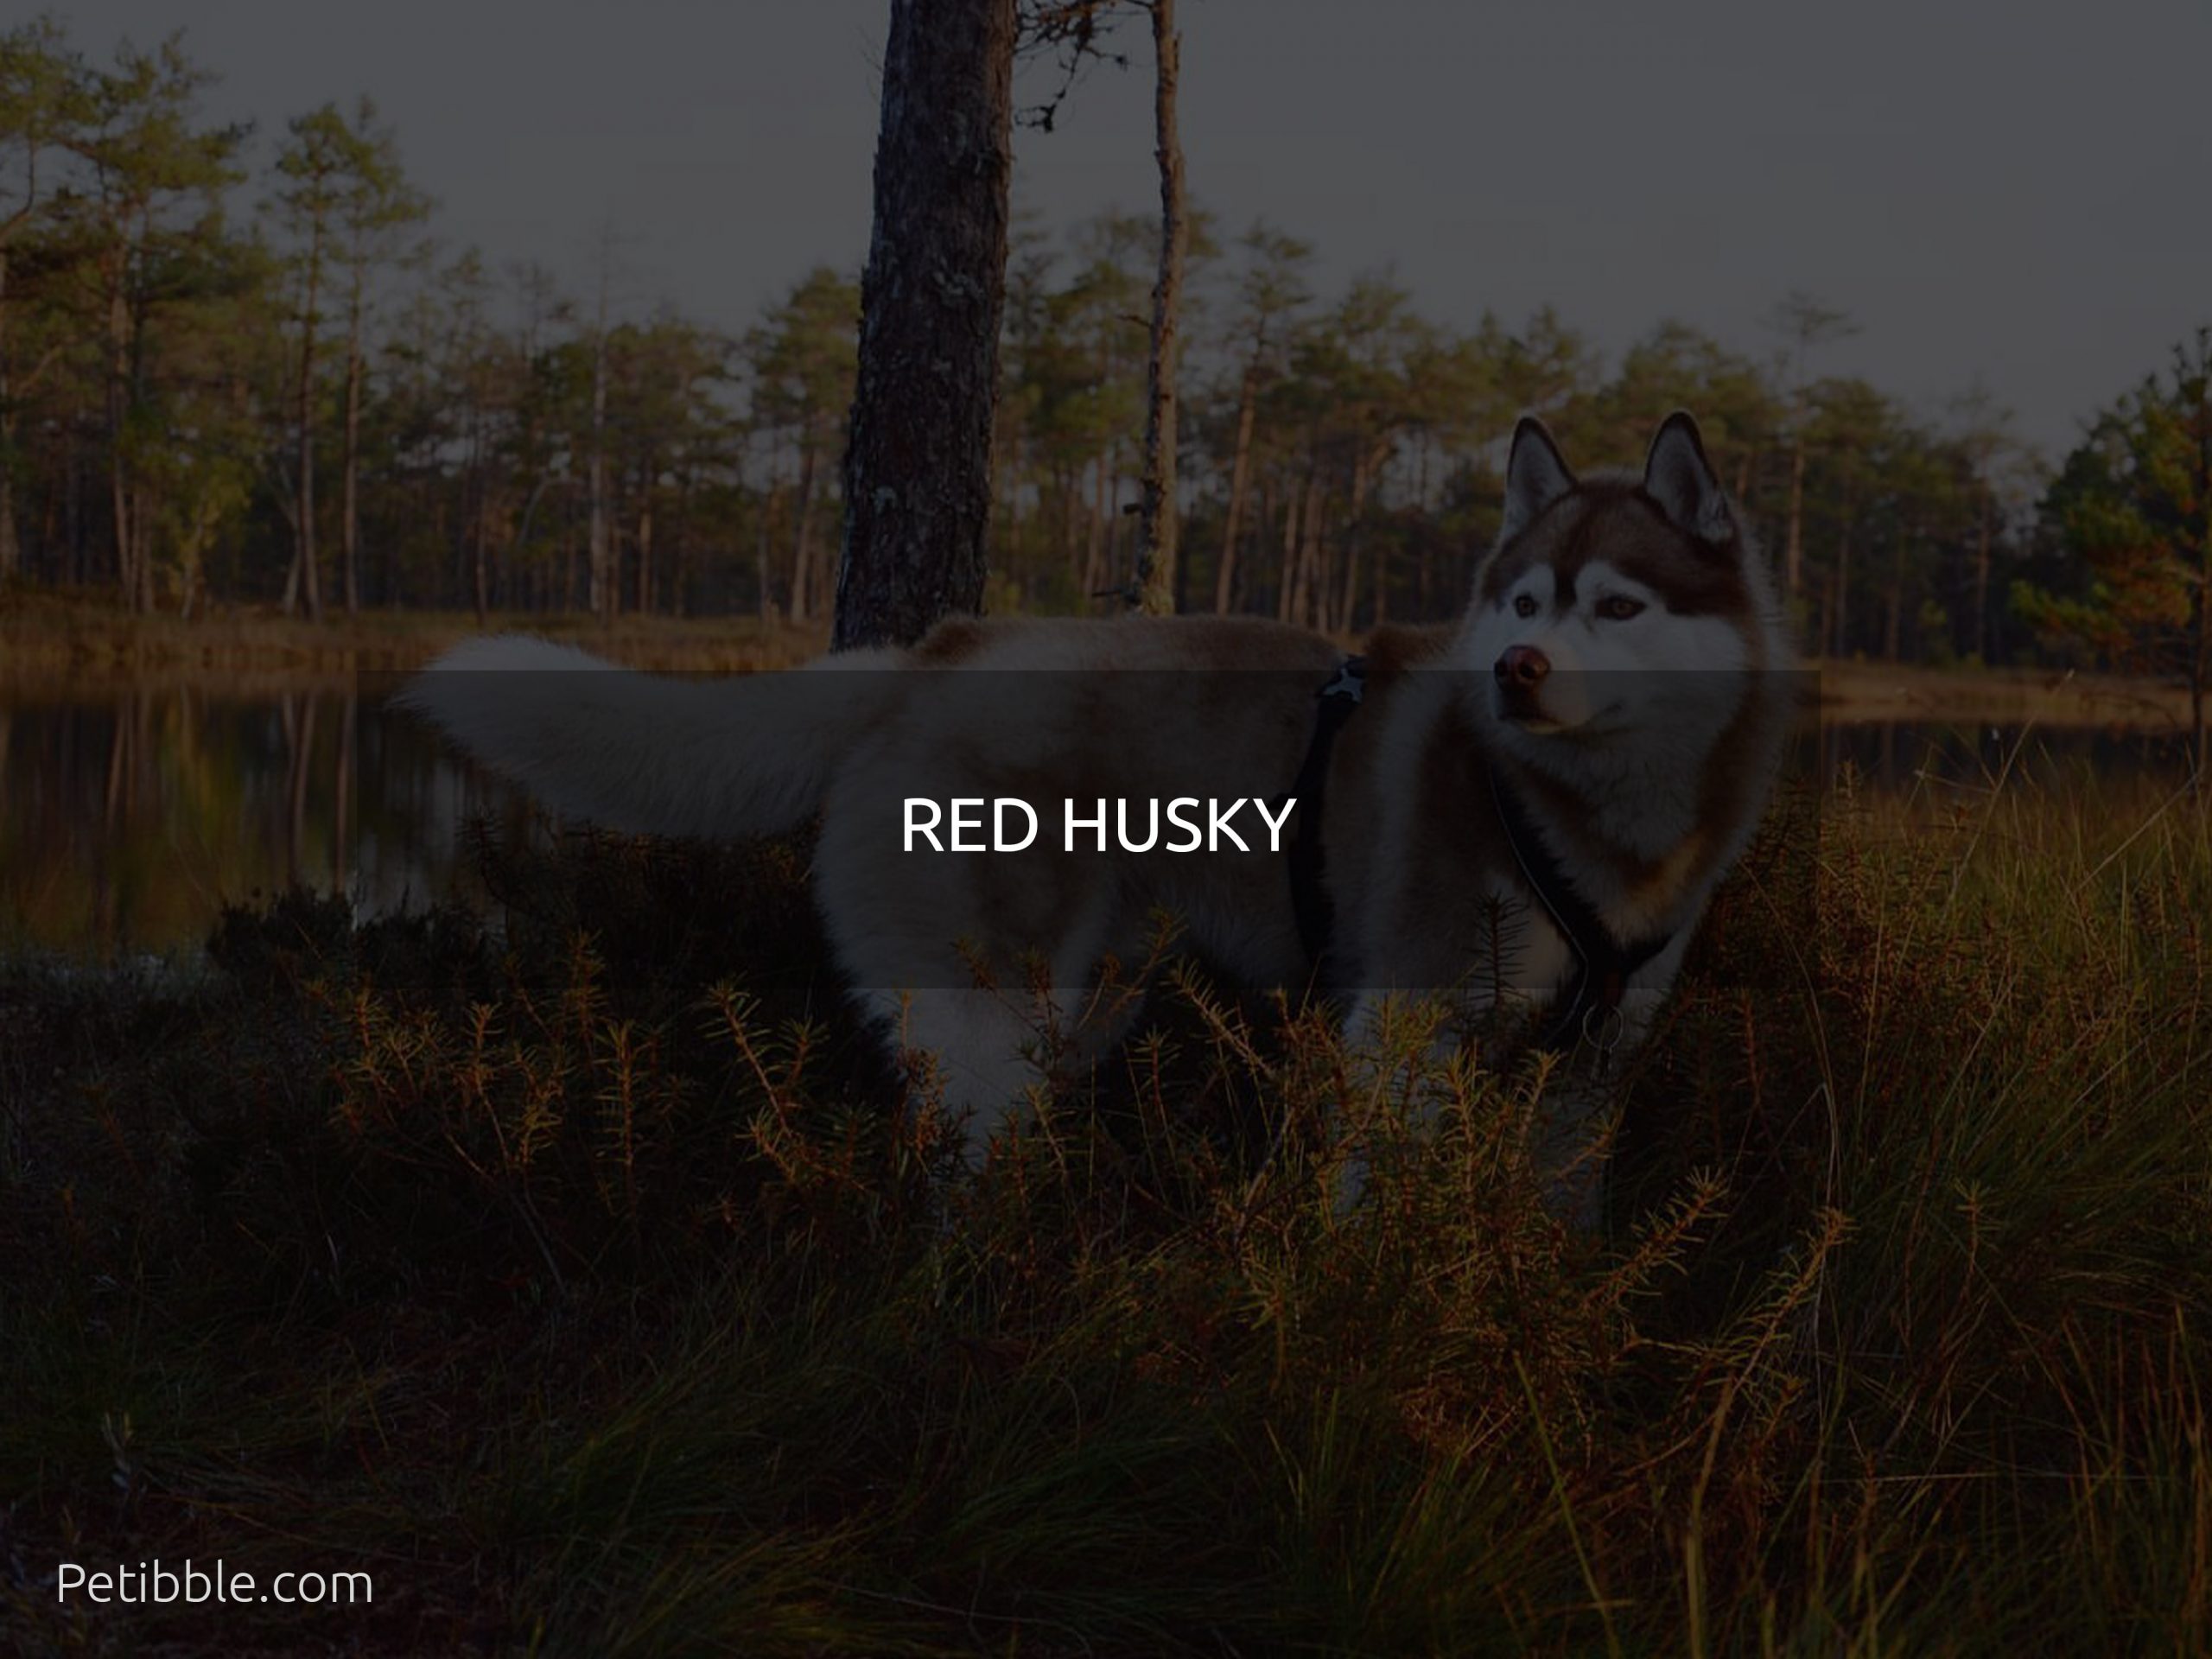 Red husky